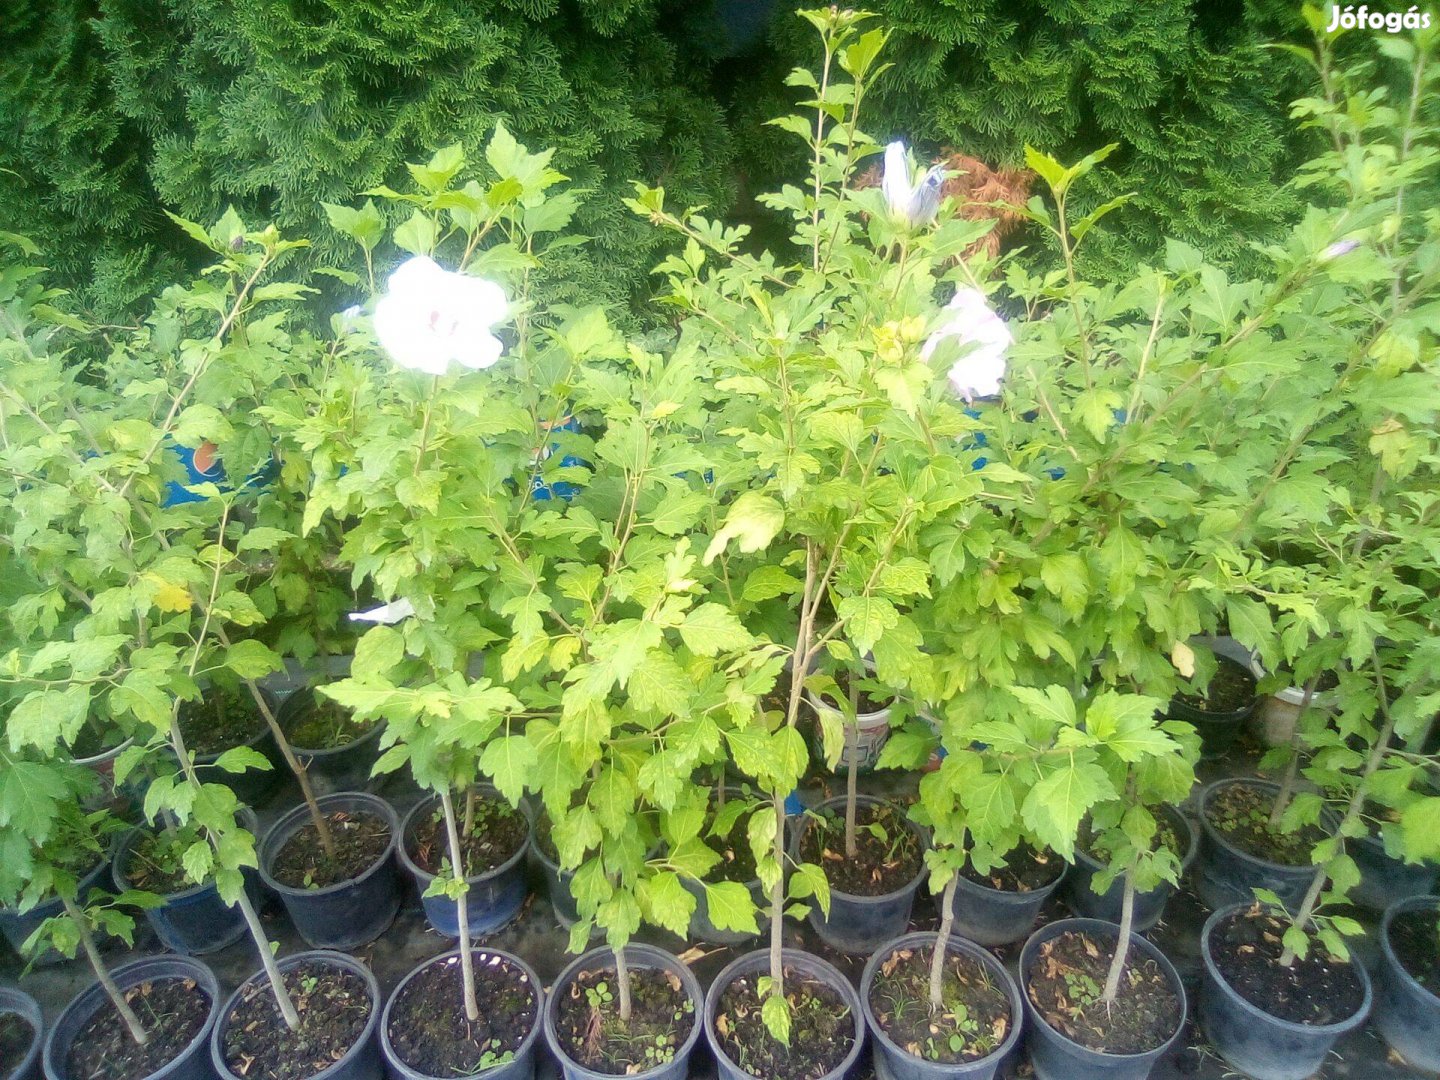 Syr hibiszkusz (mályvacserje) növények fehér és lila színben eladó